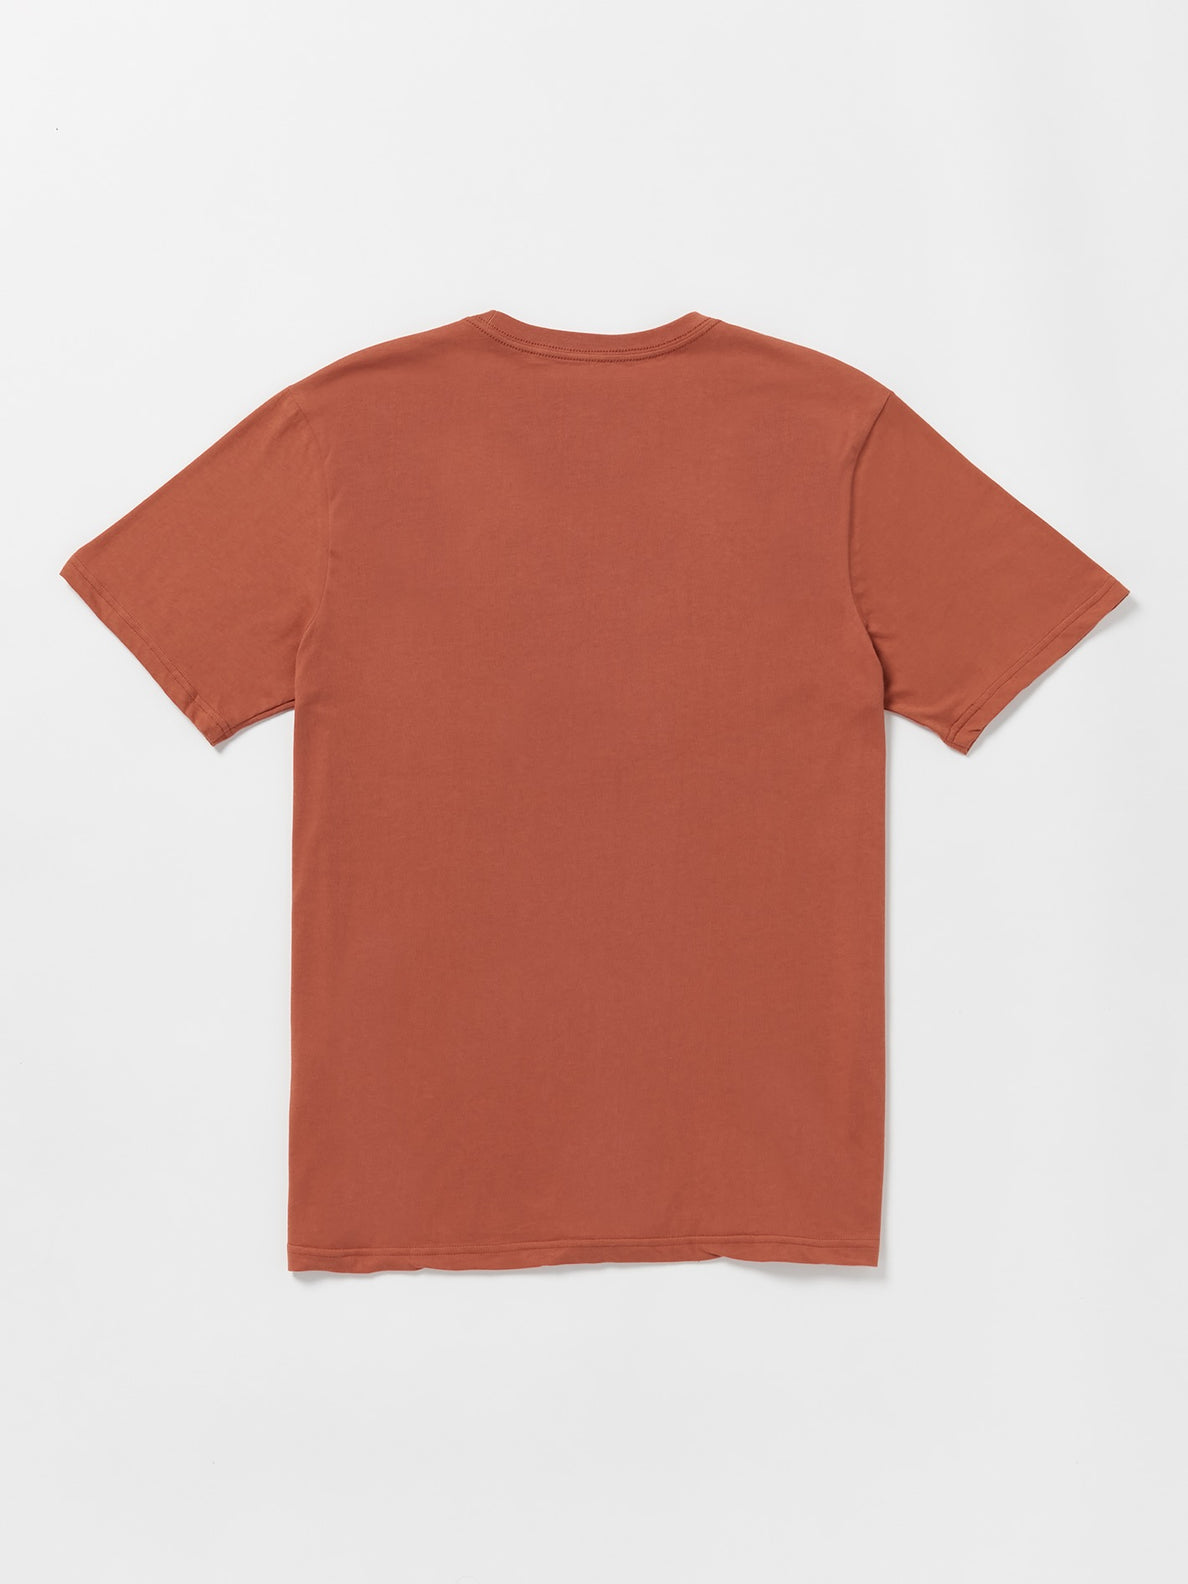 Maniacal Short Sleeve T-Shirt - Rust